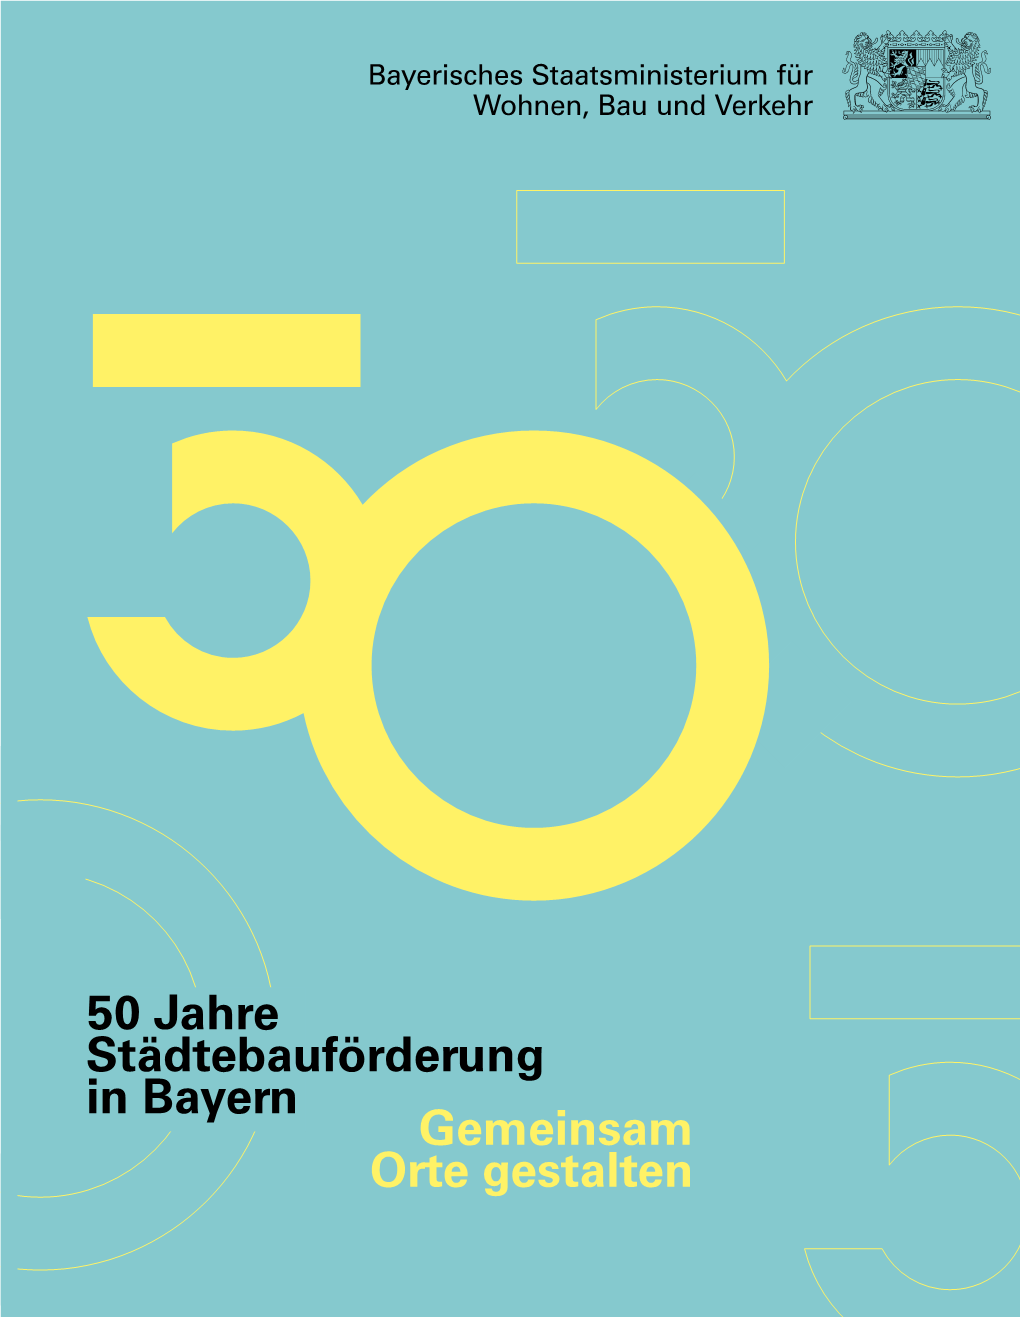 50 Jahre Städtebauförderung in Bayern Adt Und Mobilität: Sozialer,Adt Undmobilität: 100 Zukunft Derstädtebauförderung 98 98 98